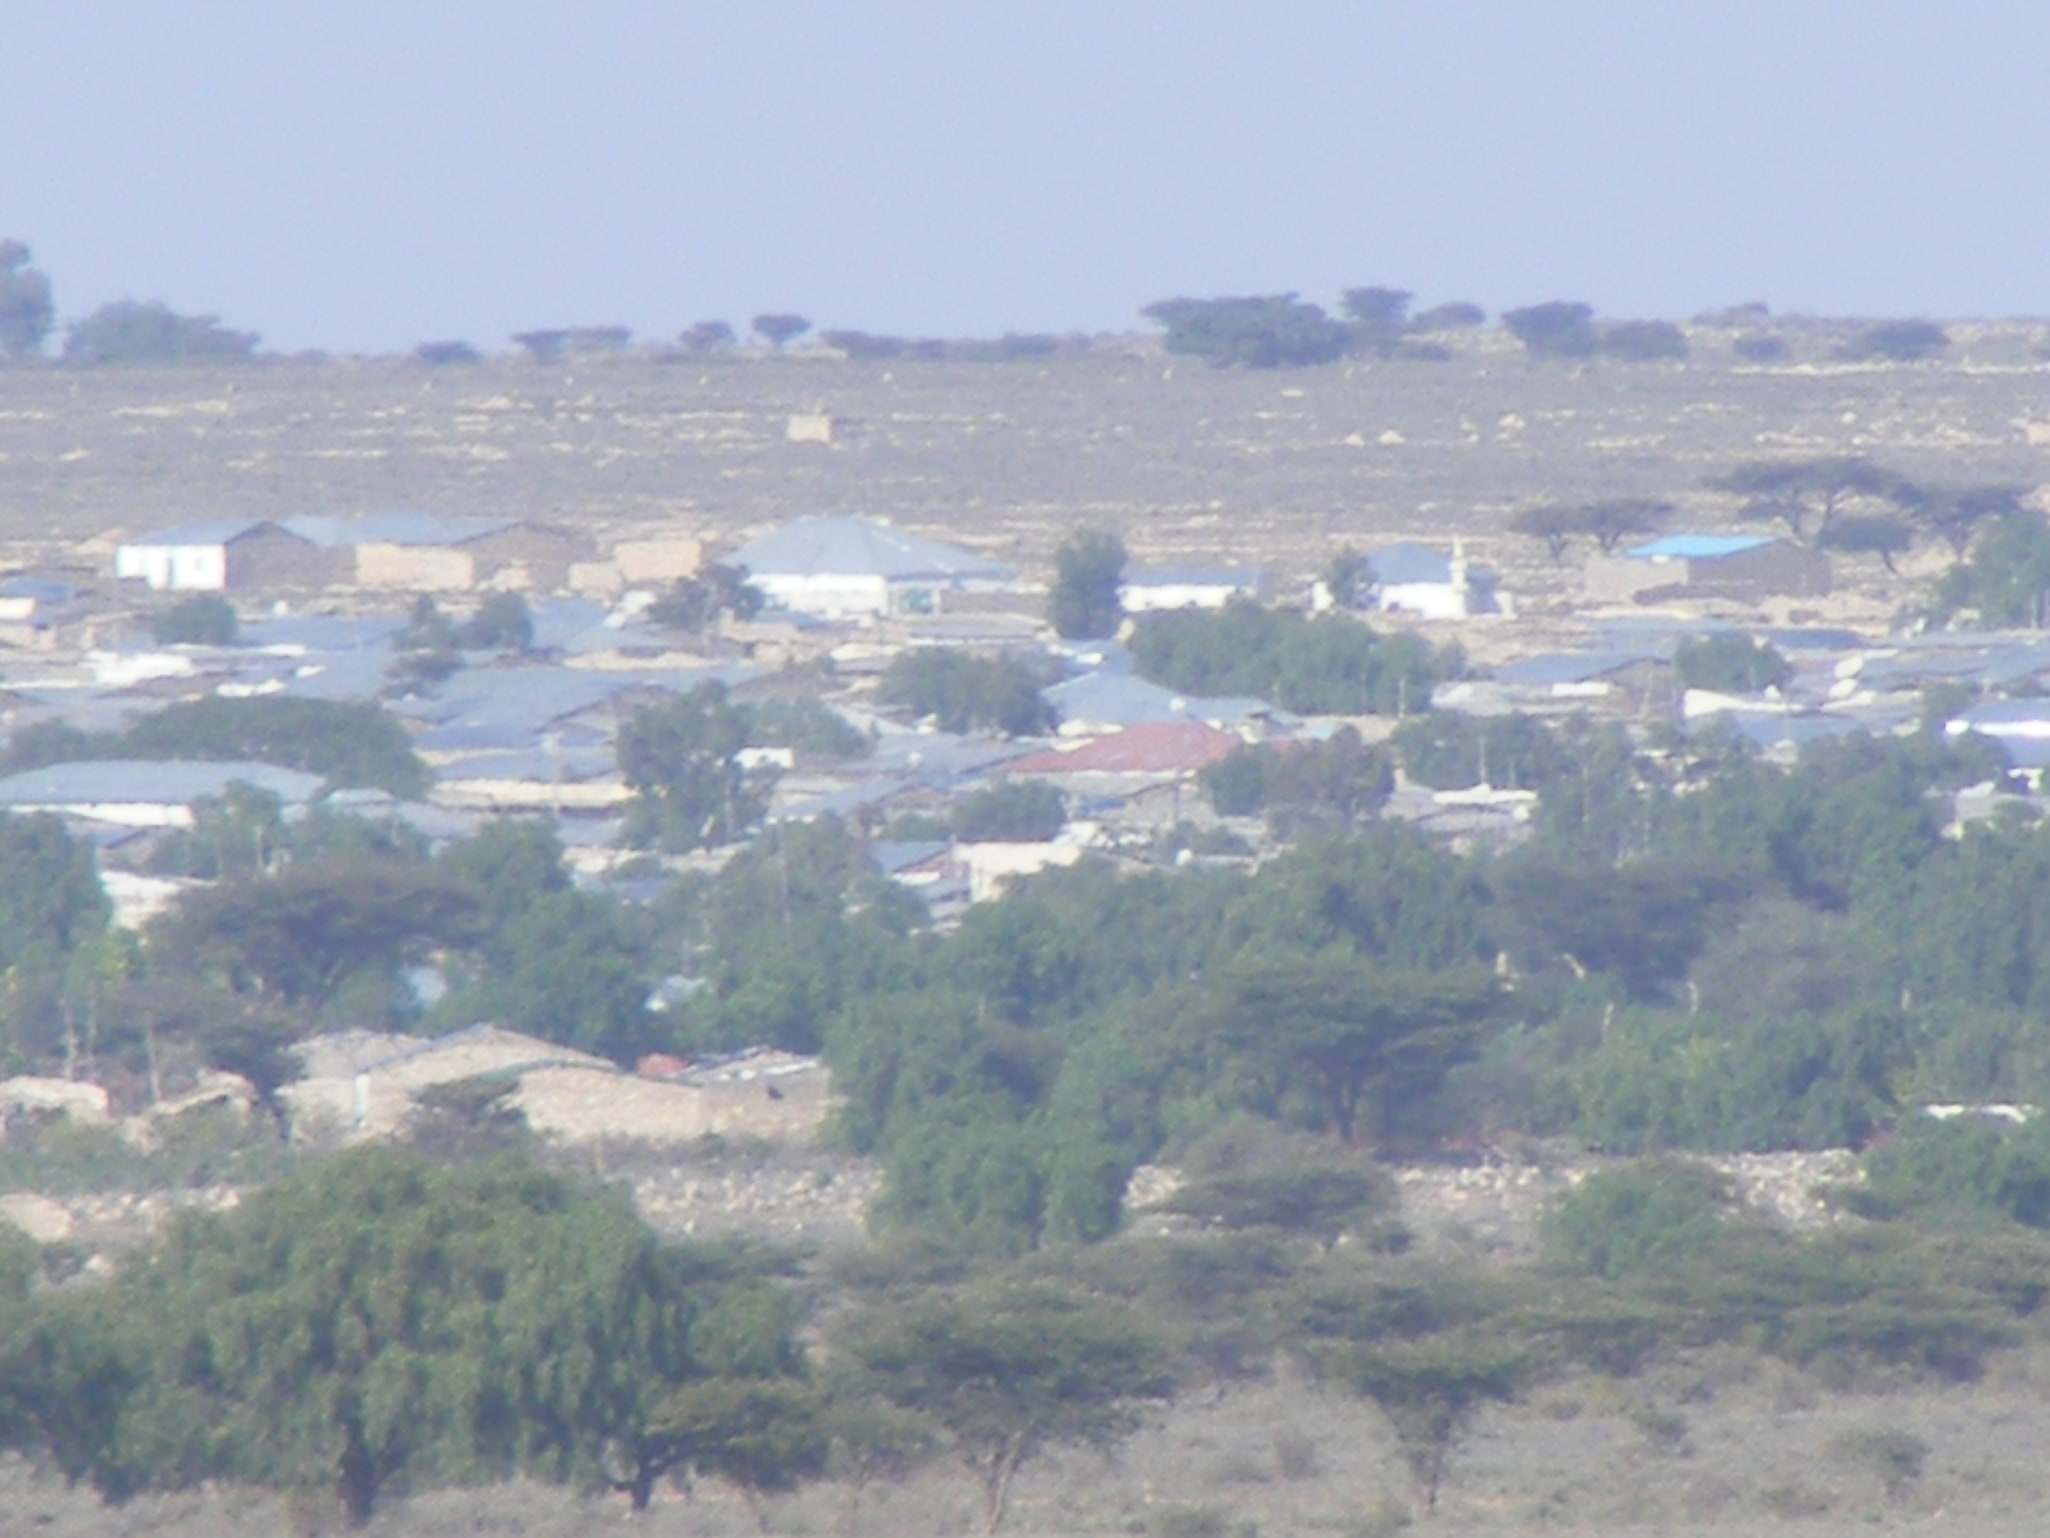 Erigavo, Somalia